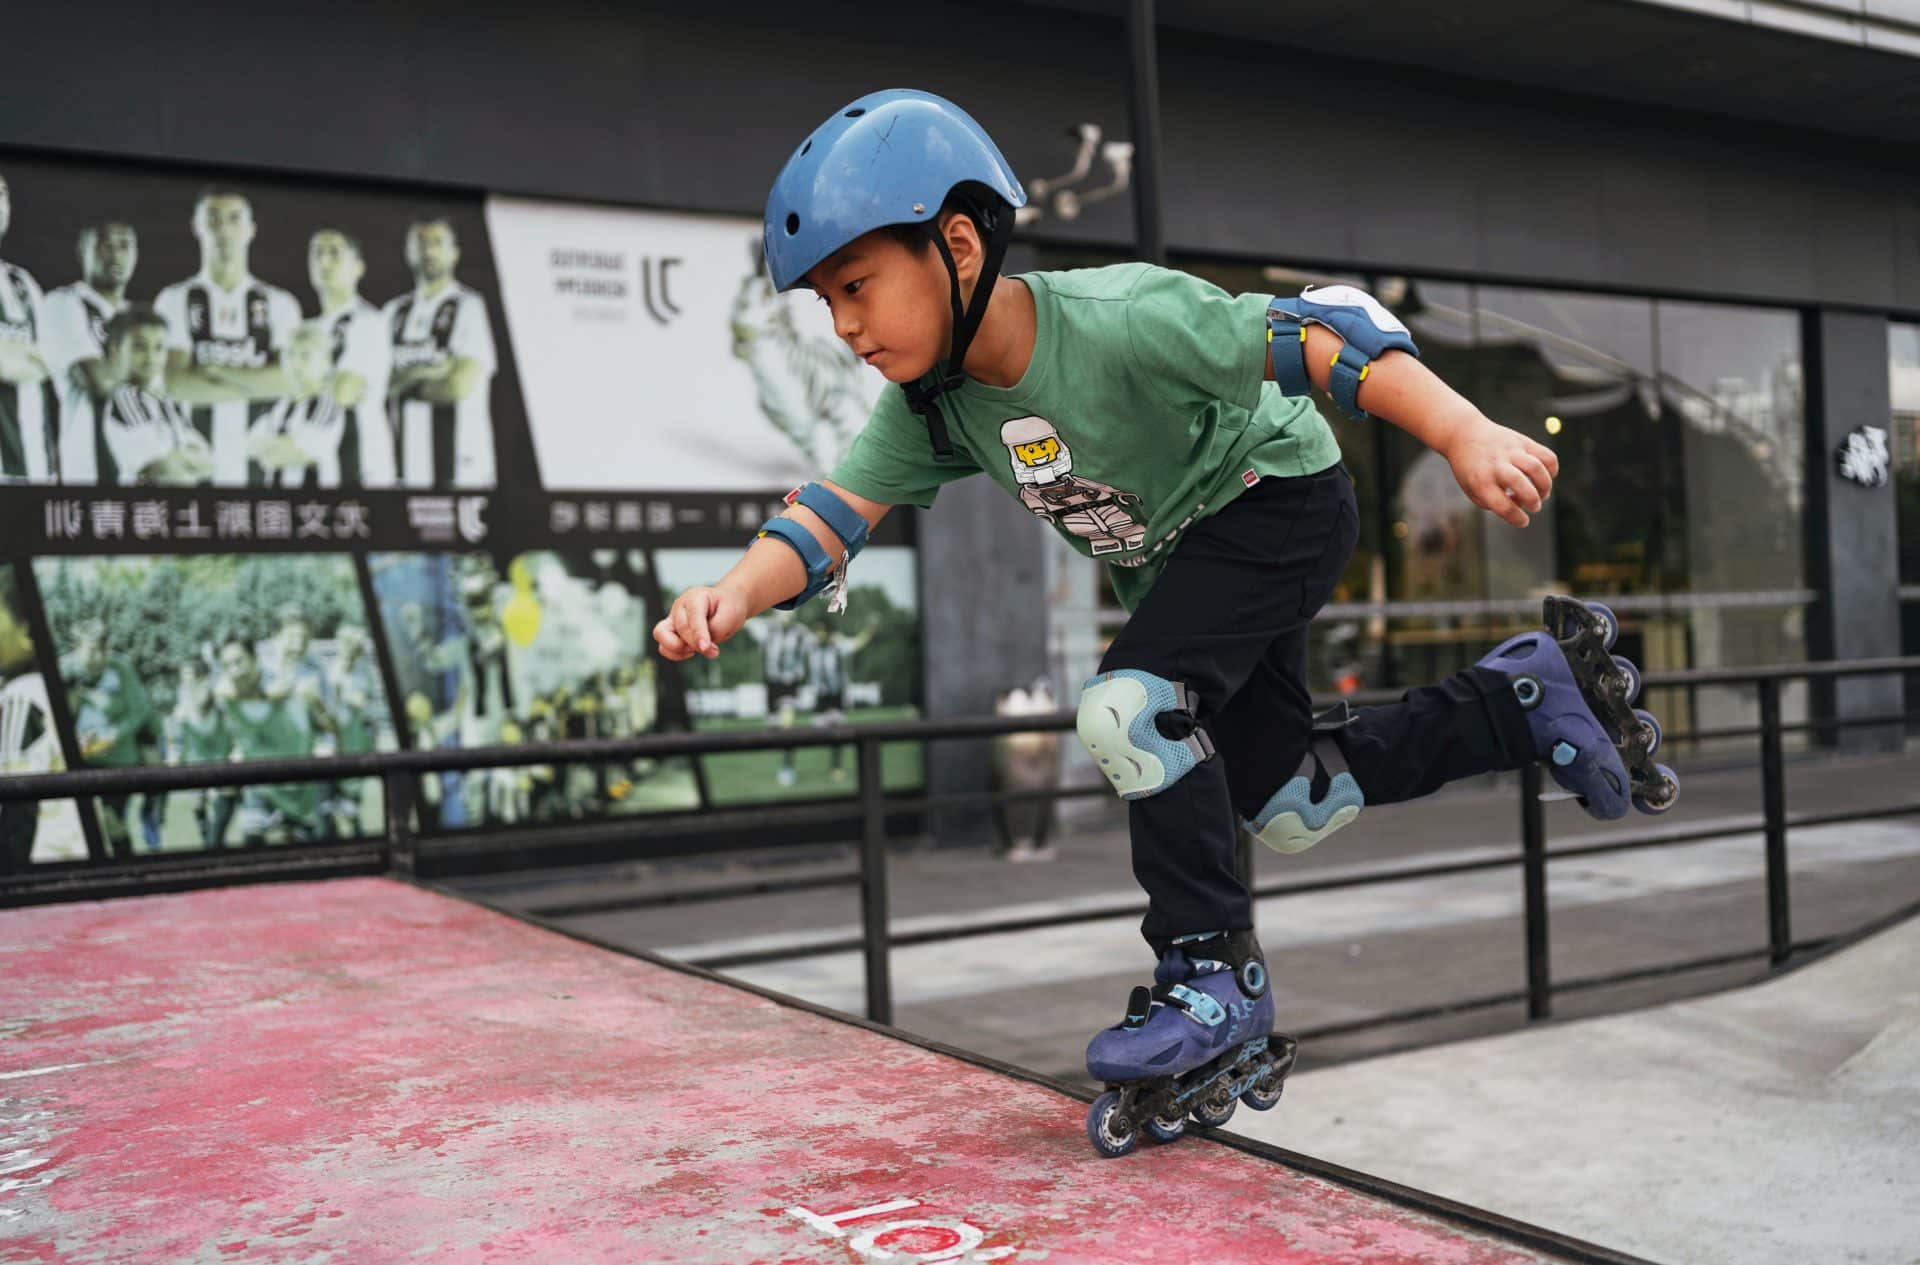 jeune garçon faisant du roller avec des protections (casque, genouillère et coudière) dans un skatepark